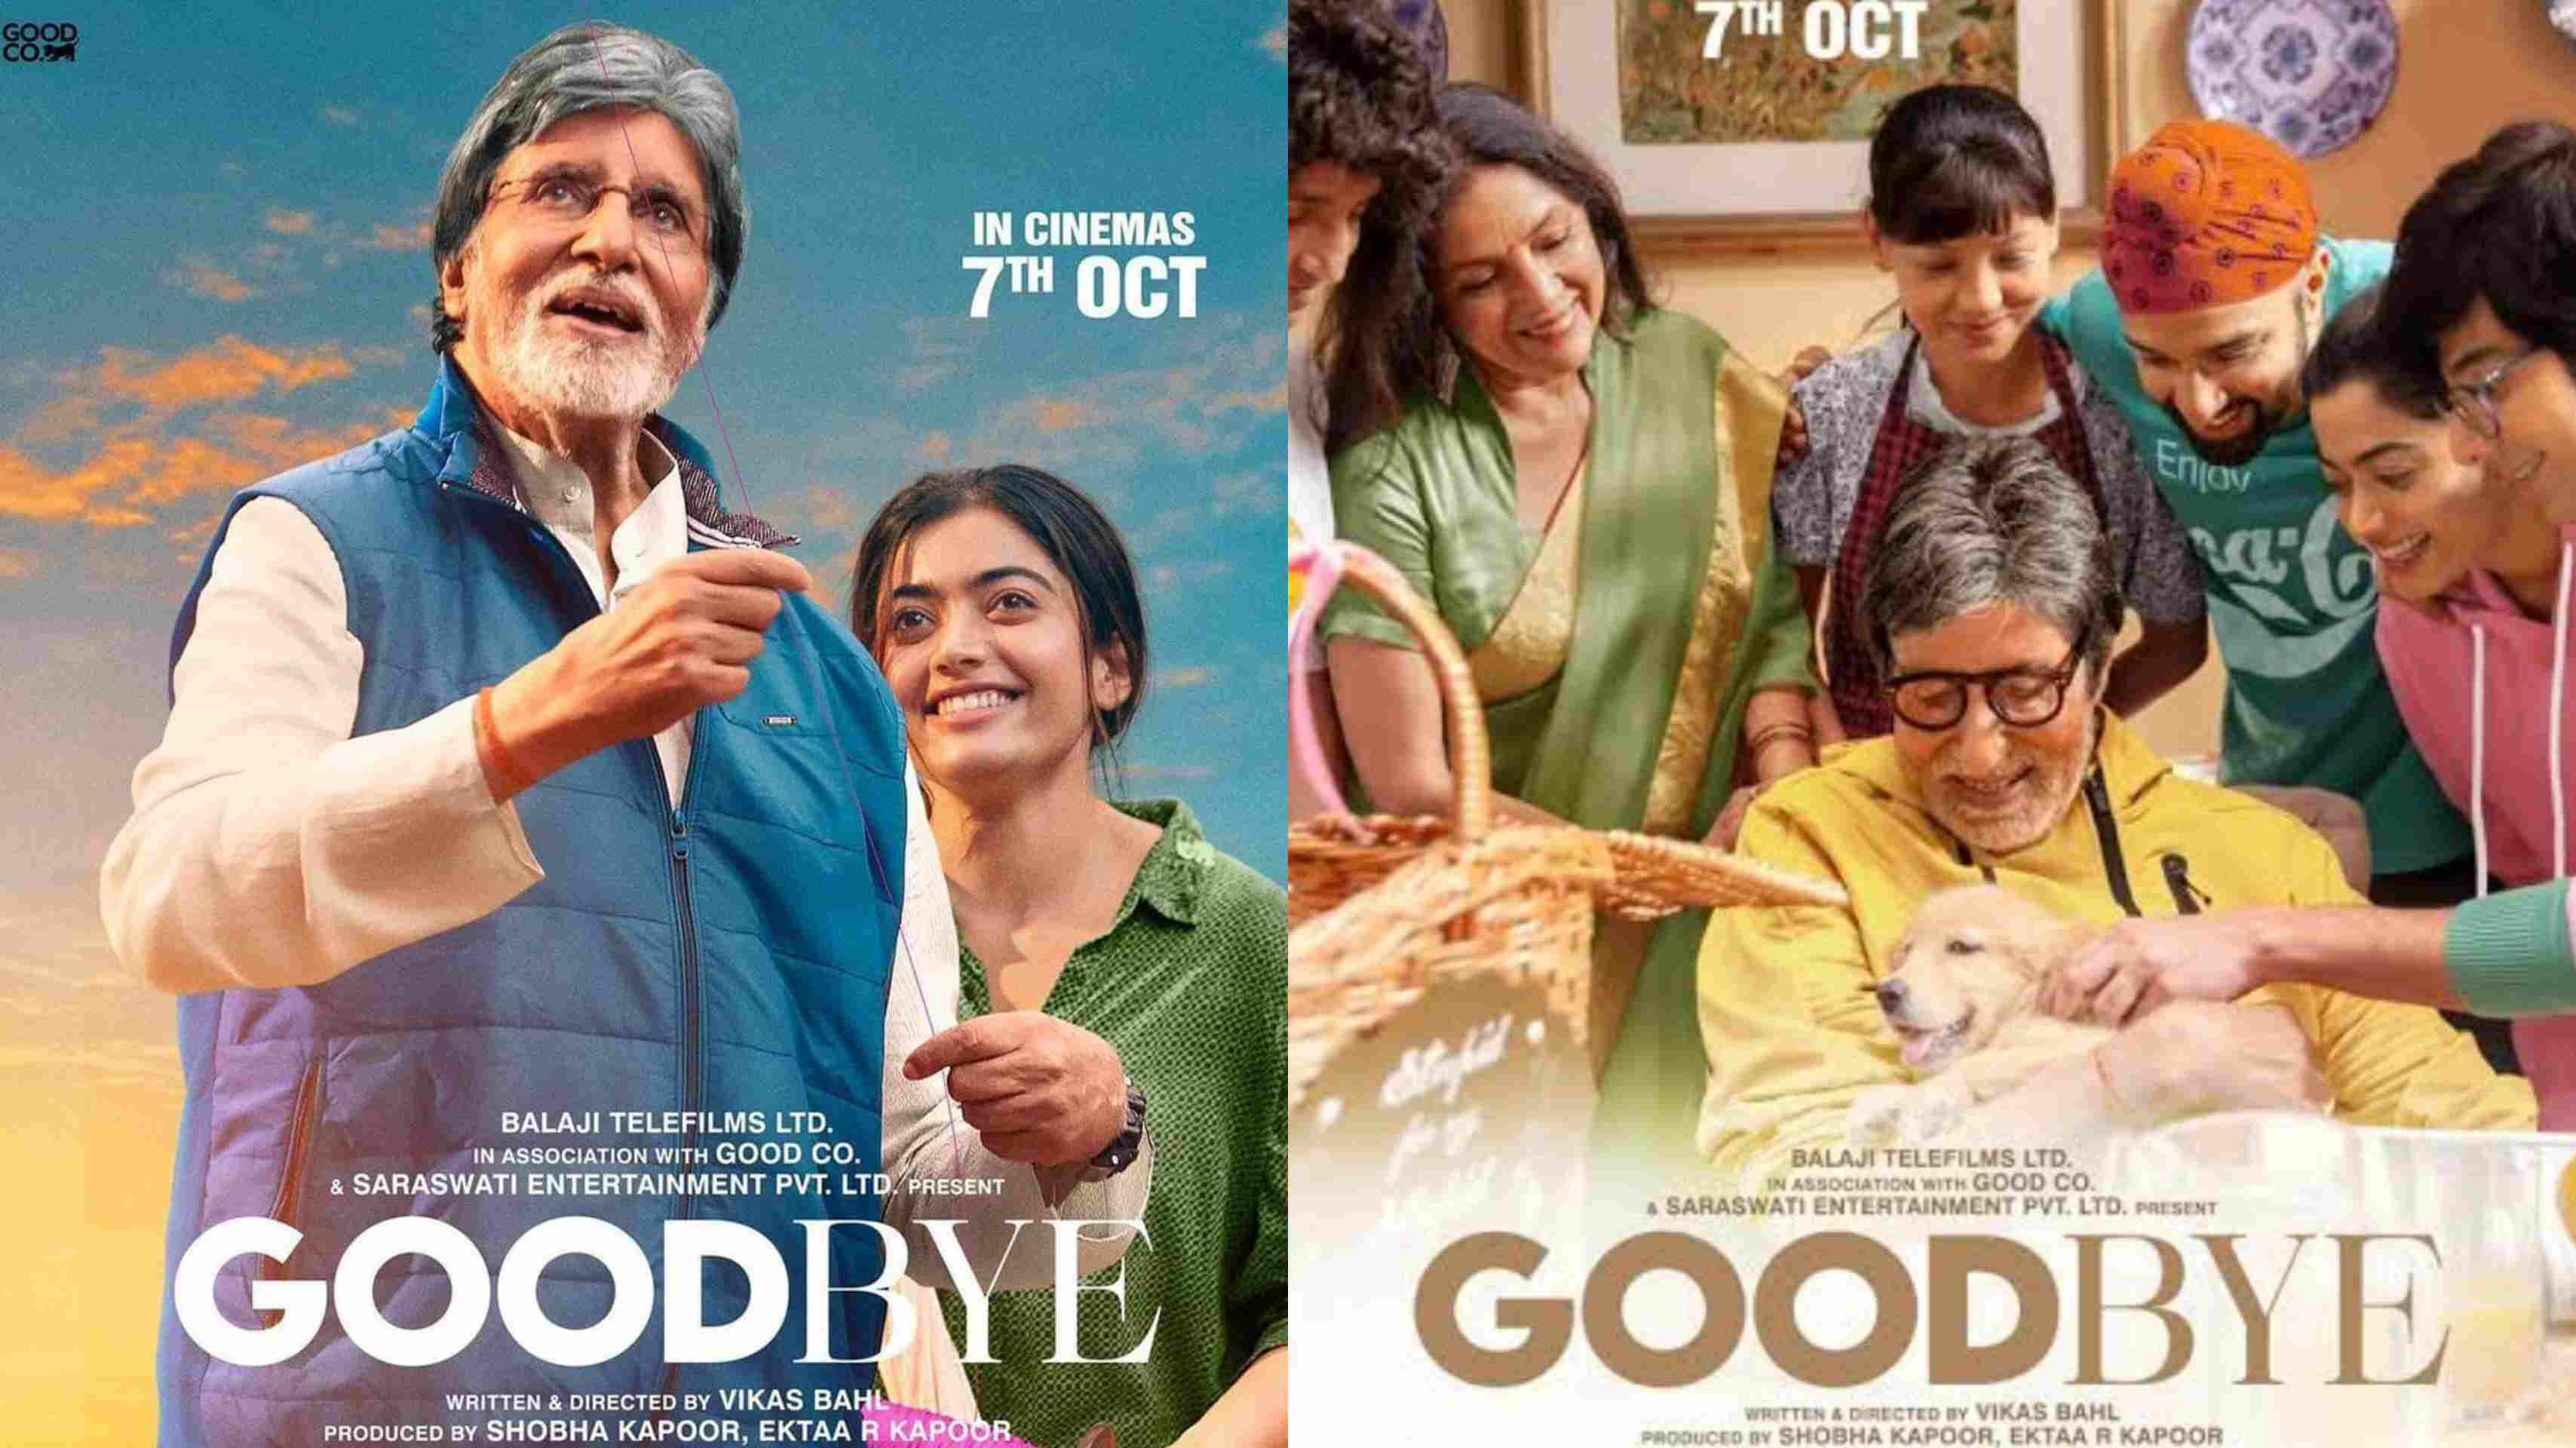 अमिताभ बच्चन की फिल्म गुड बाय की निराशाजनक शुरुआत